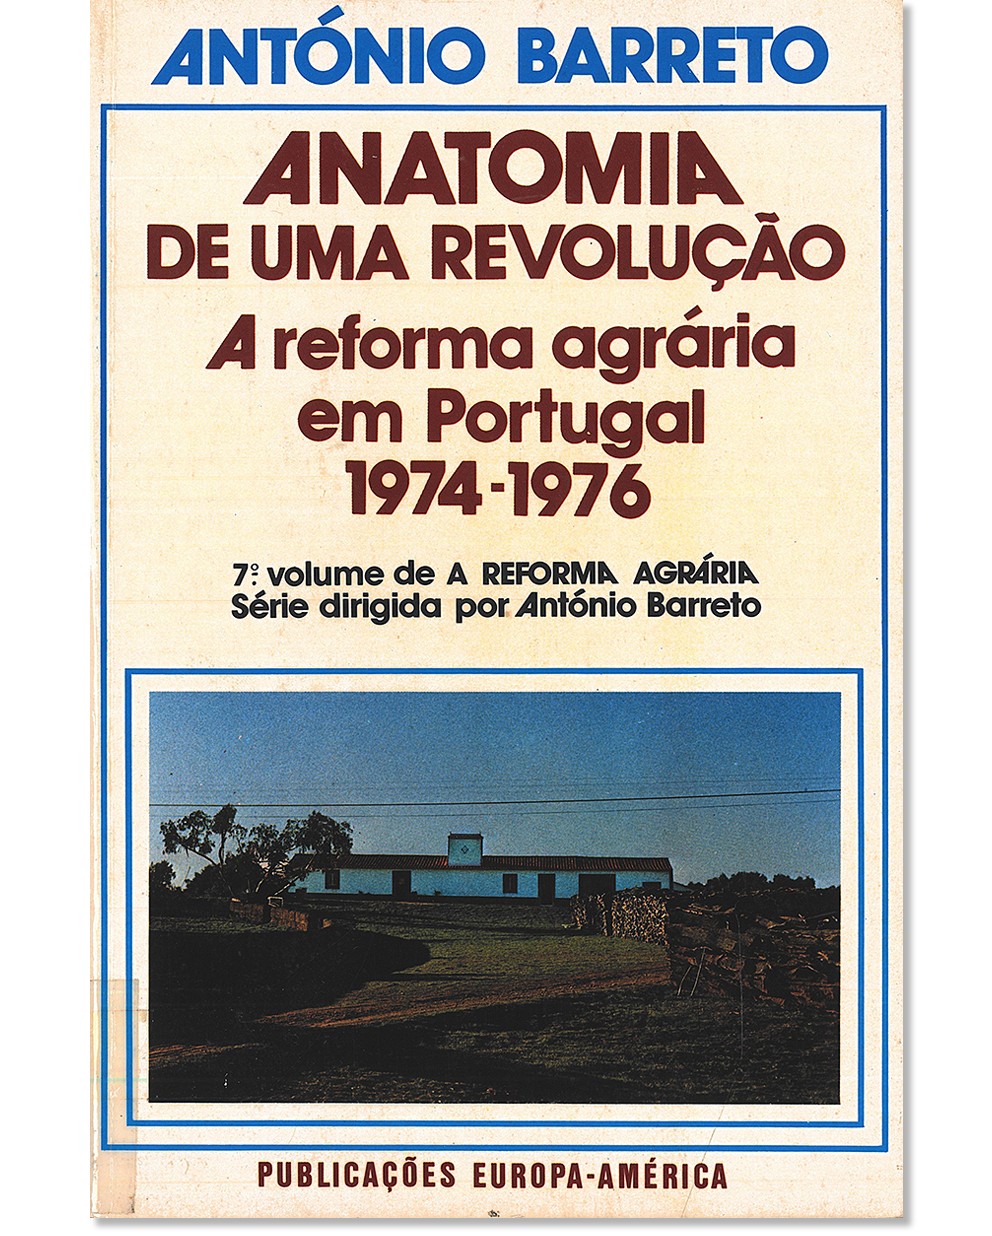 Anatomia de uma revolução : a reforma agrária em Portugal, 1974-1976 (A reforma agrária, vol. 7)